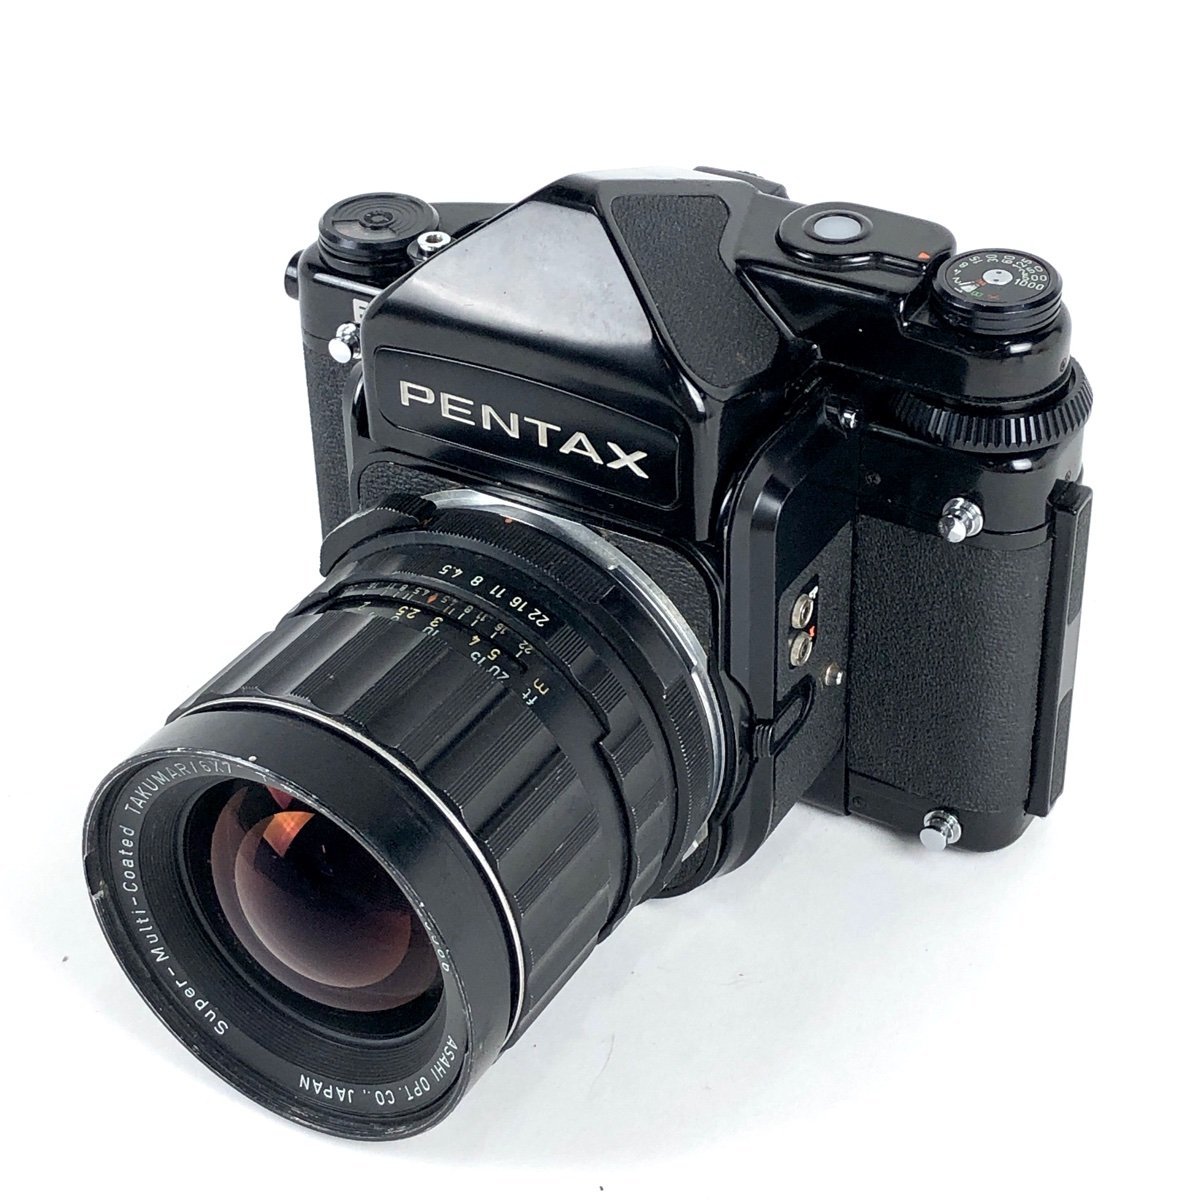 超歓迎された】 TTL 67 PENTAX ペンタックス + 【中古】 中判カメラ F4.5 75mm TAKUMAR/6x7 SMC ペンタックス  - www.jkuat.ac.ke